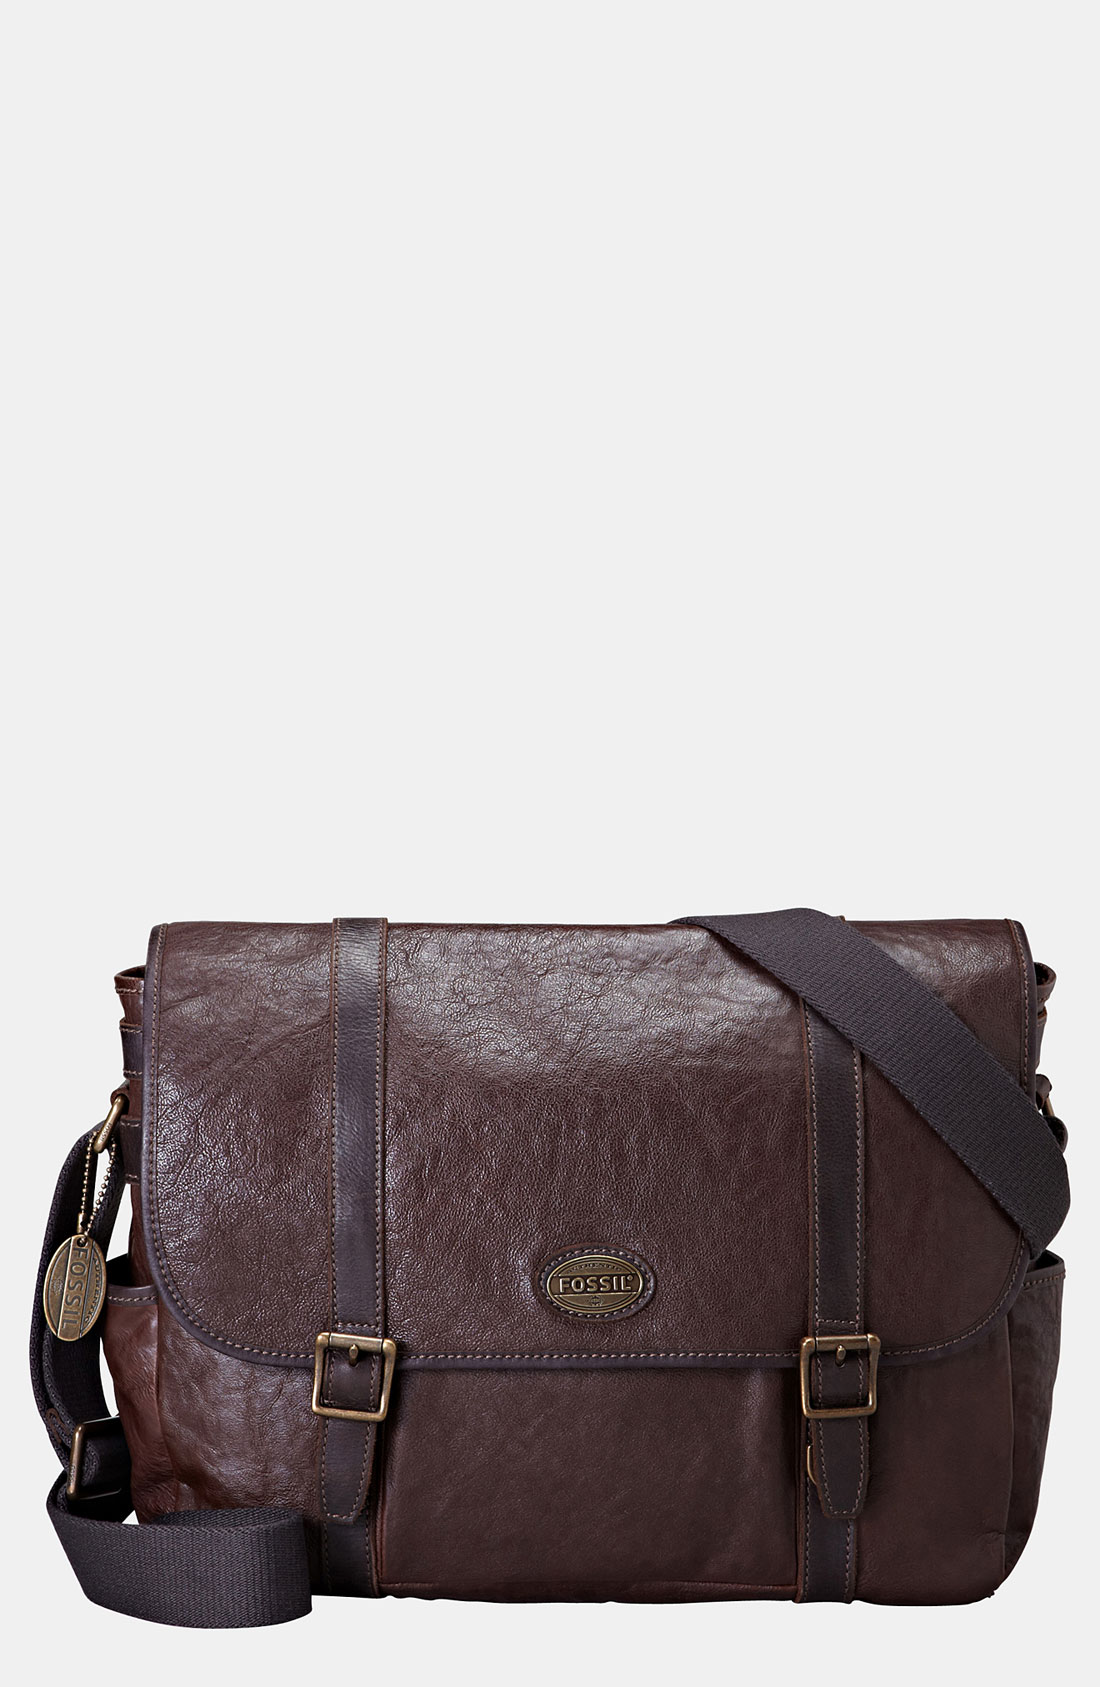 Fossil Estate Messenger Bag in Brown for Men (dark brown) | Lyst